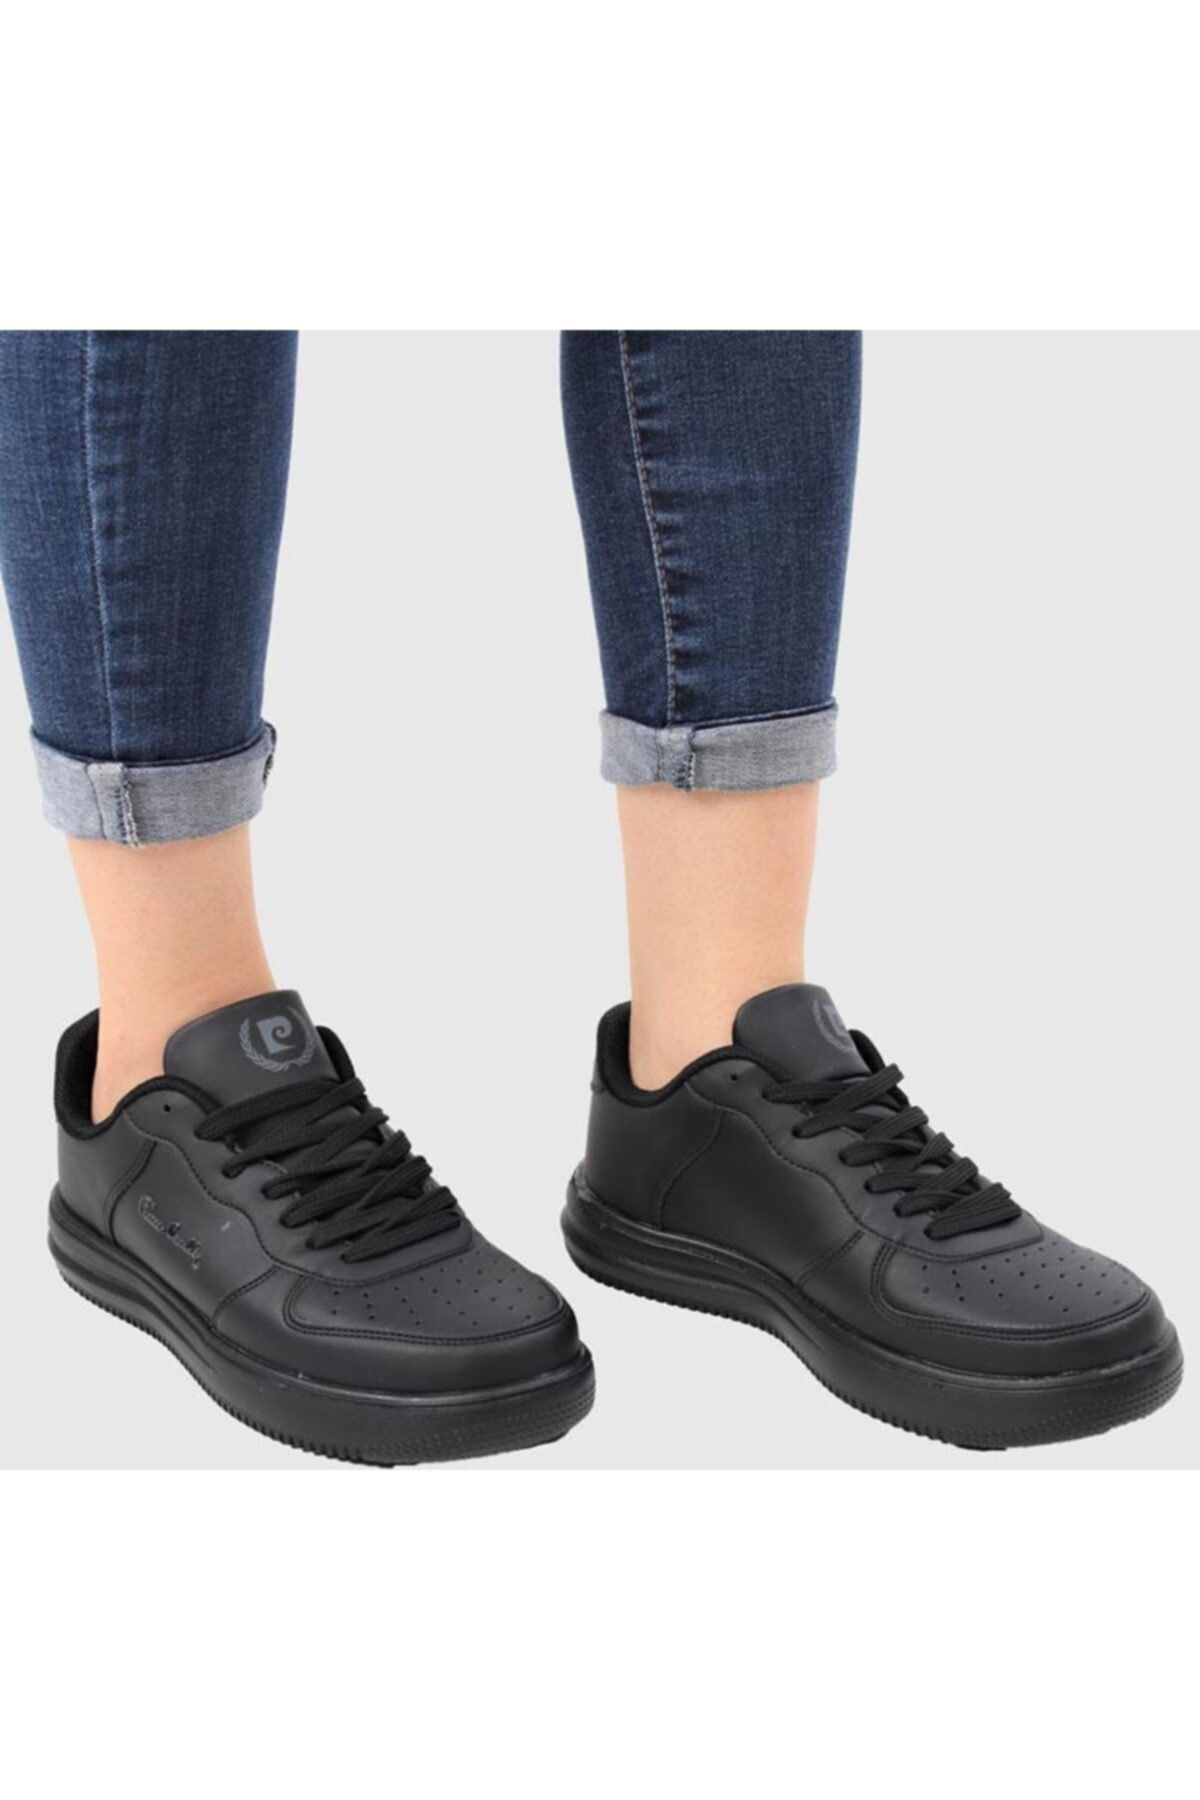 Pierre Cardin Kadın Günlük Sneaker Ayakkabı